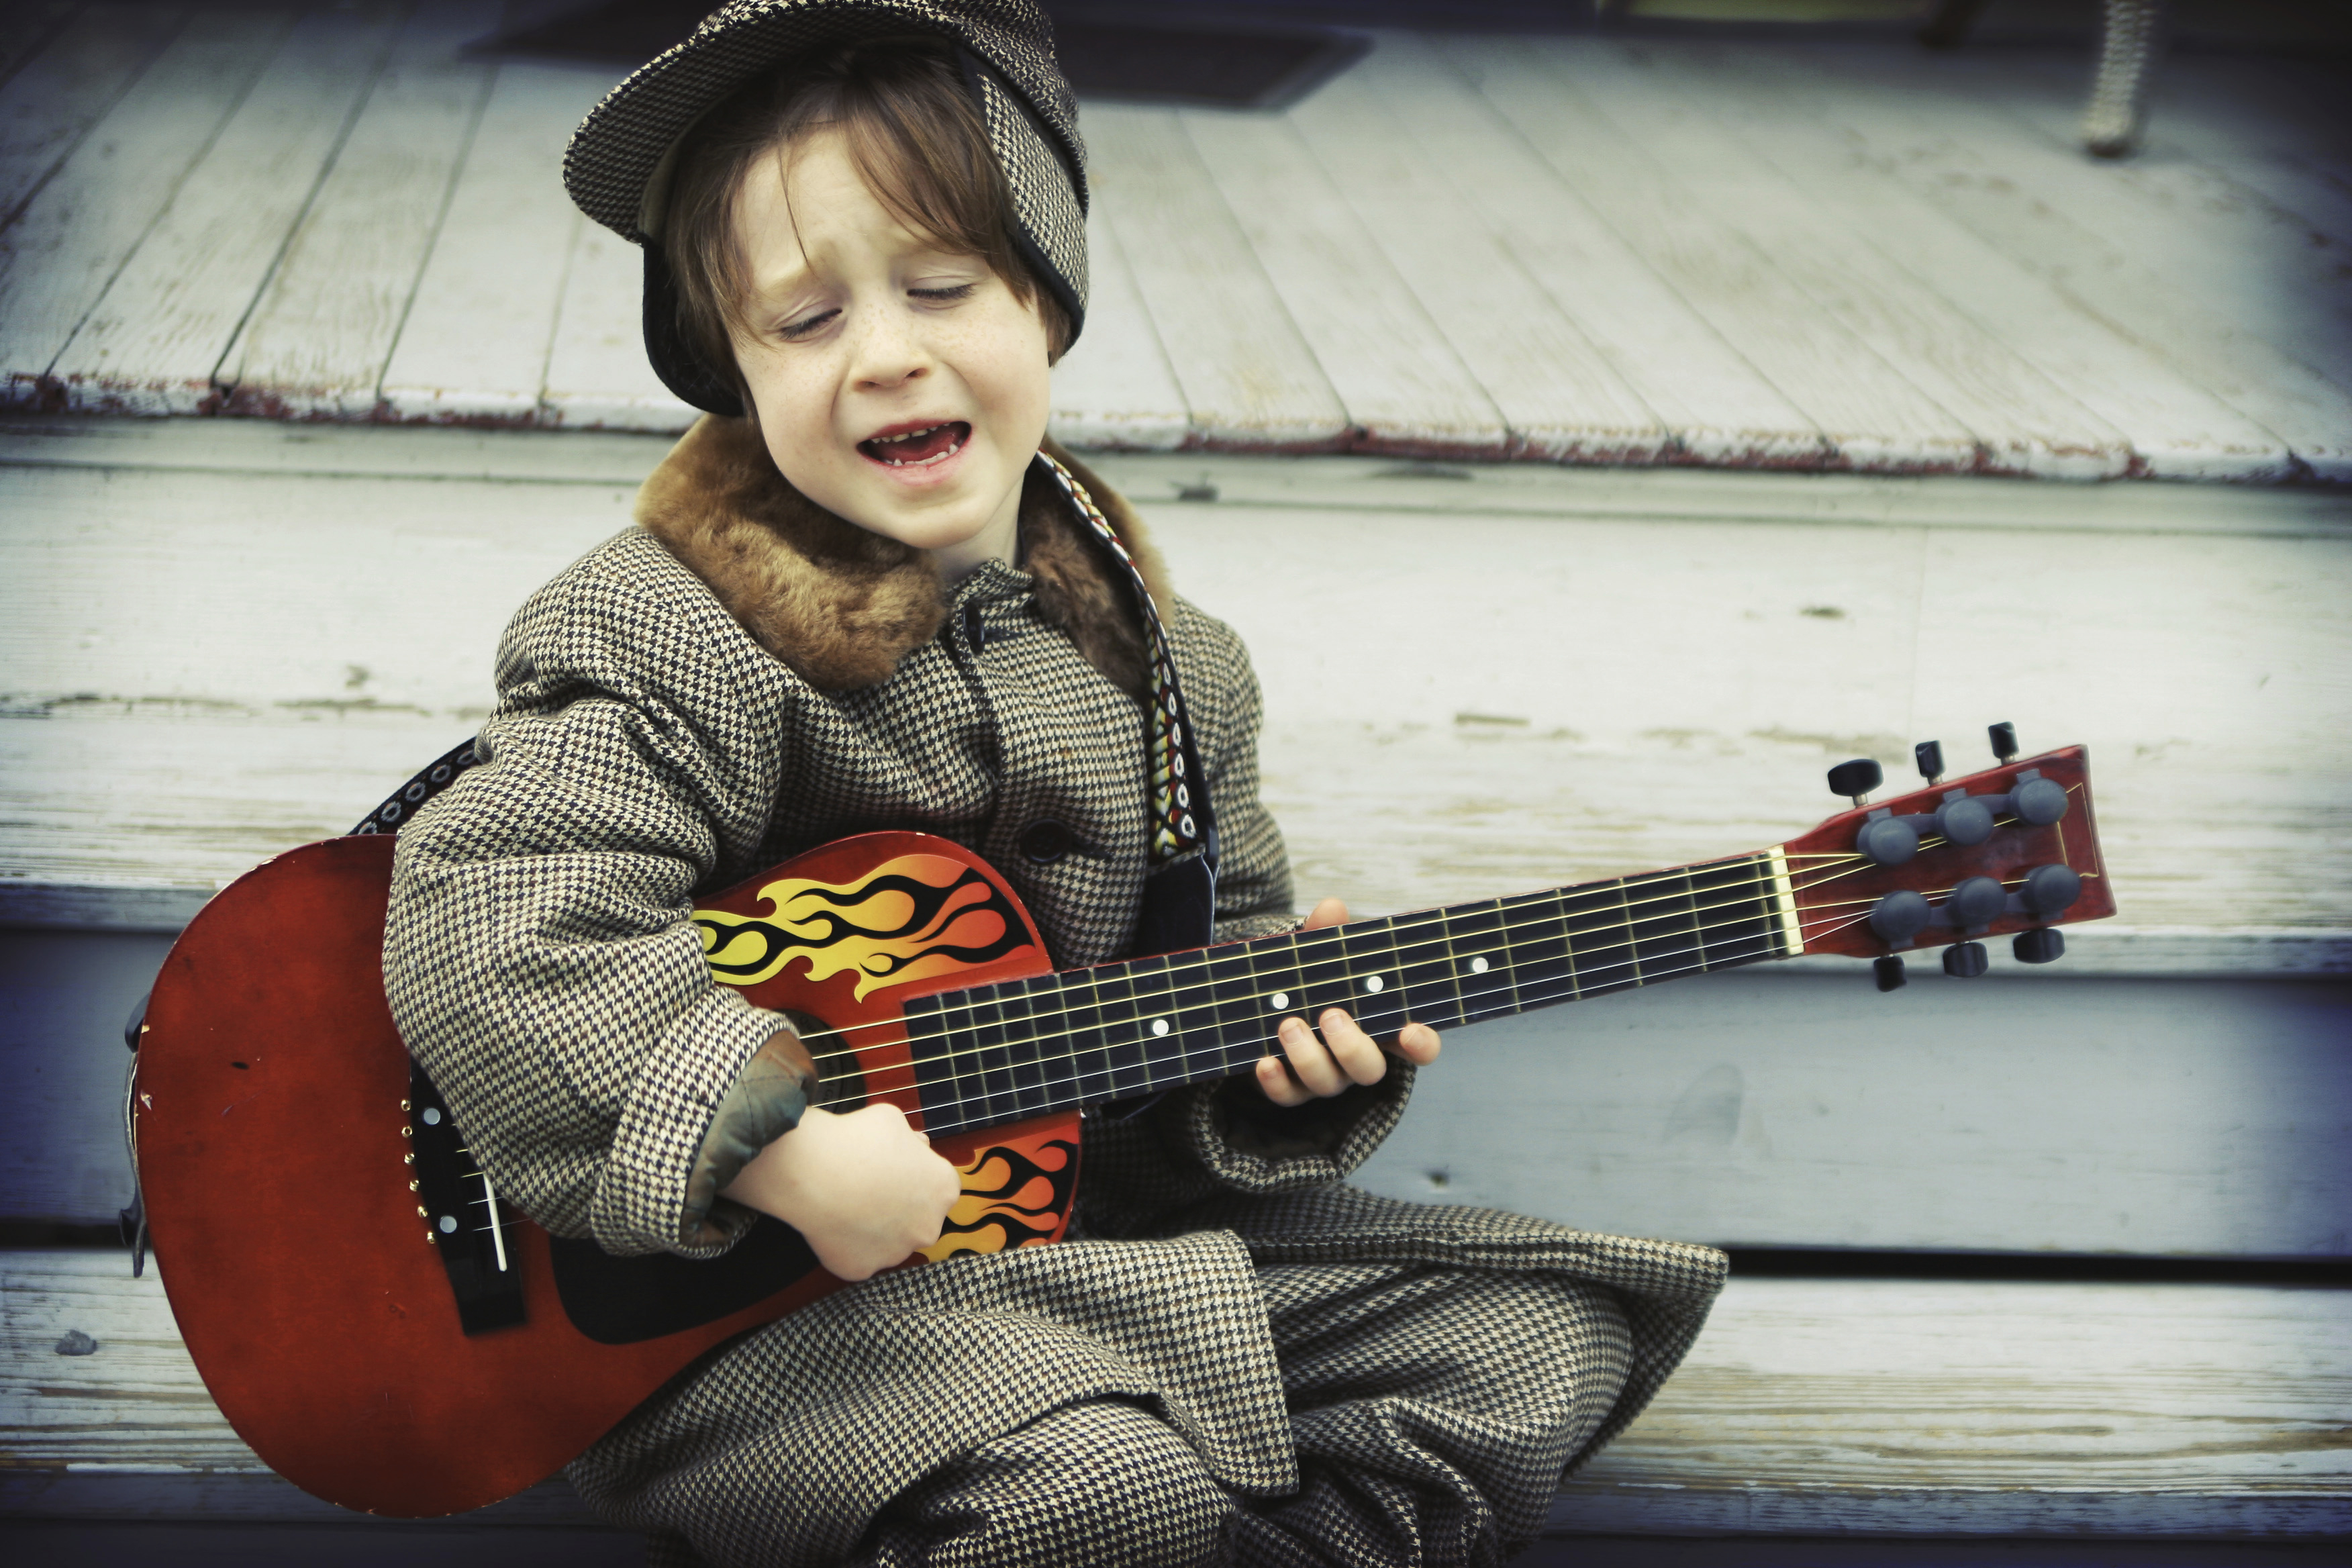 Пою тише гитары. Гитара для детей. Дети гитаристы. Электрогитара для детей. Мальчик с гитарой.